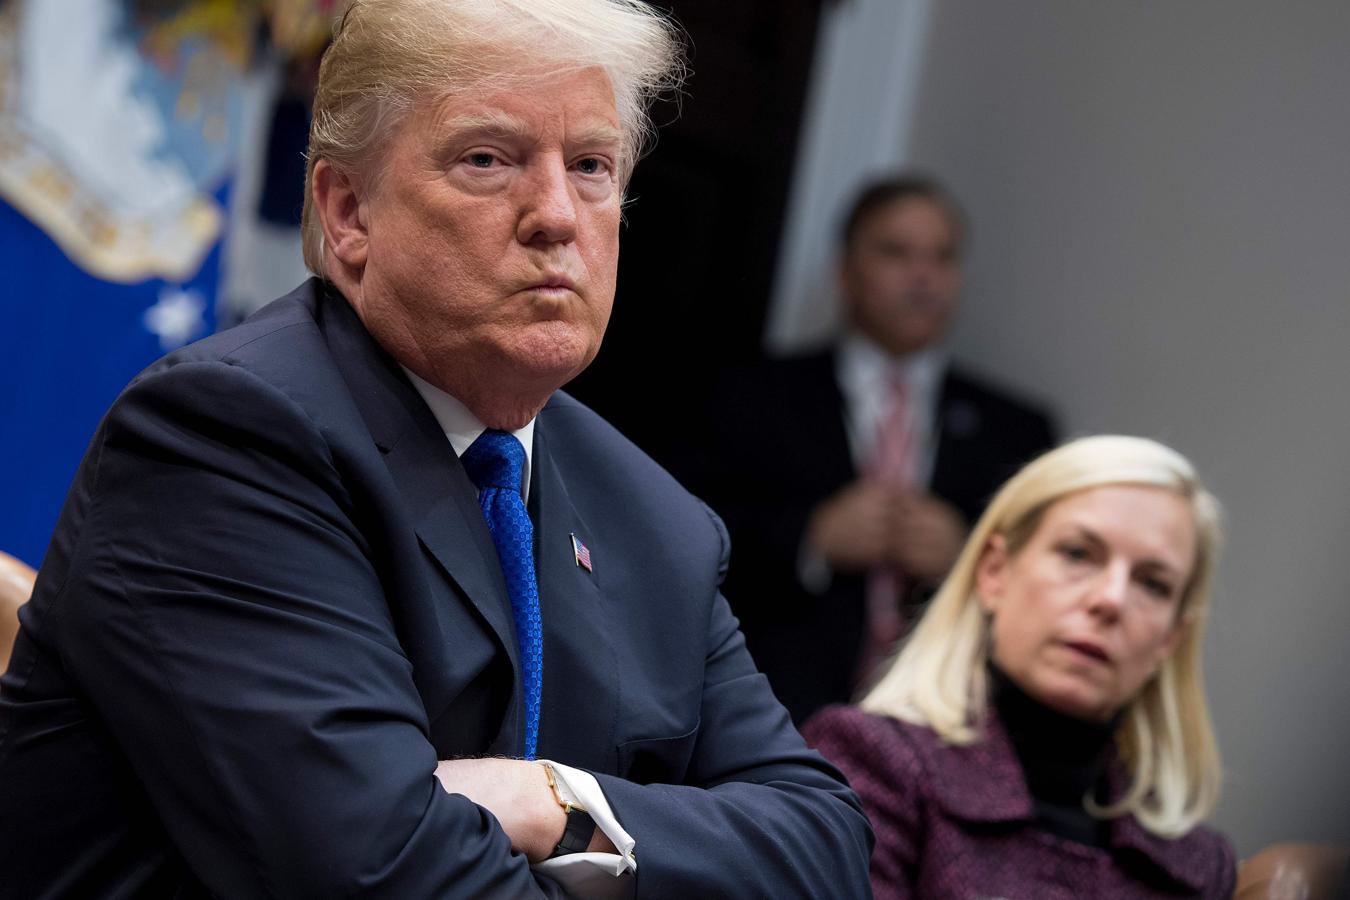 El presidente Donald Trump esucha al Secretario de Seguridad Nacional Kirstjen Nielsen durante una reunión con miembros republicanos del Senado sobre la inmigración en la Casa Blanca en Washington, DC, el 4 de enero de 2018